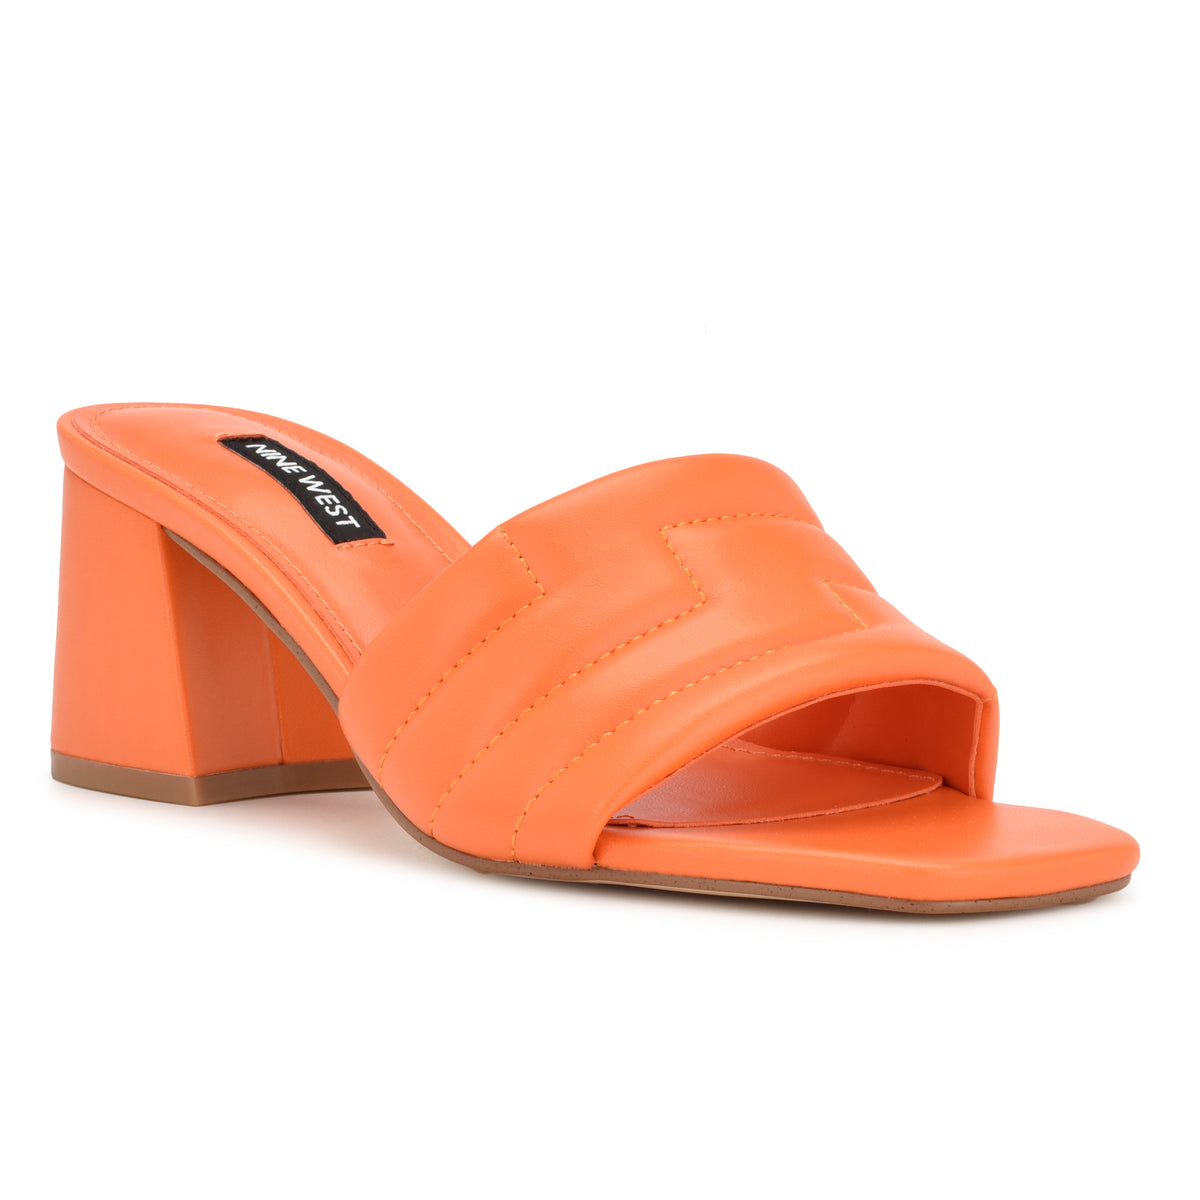 Glenra Heeled Slide Sandals